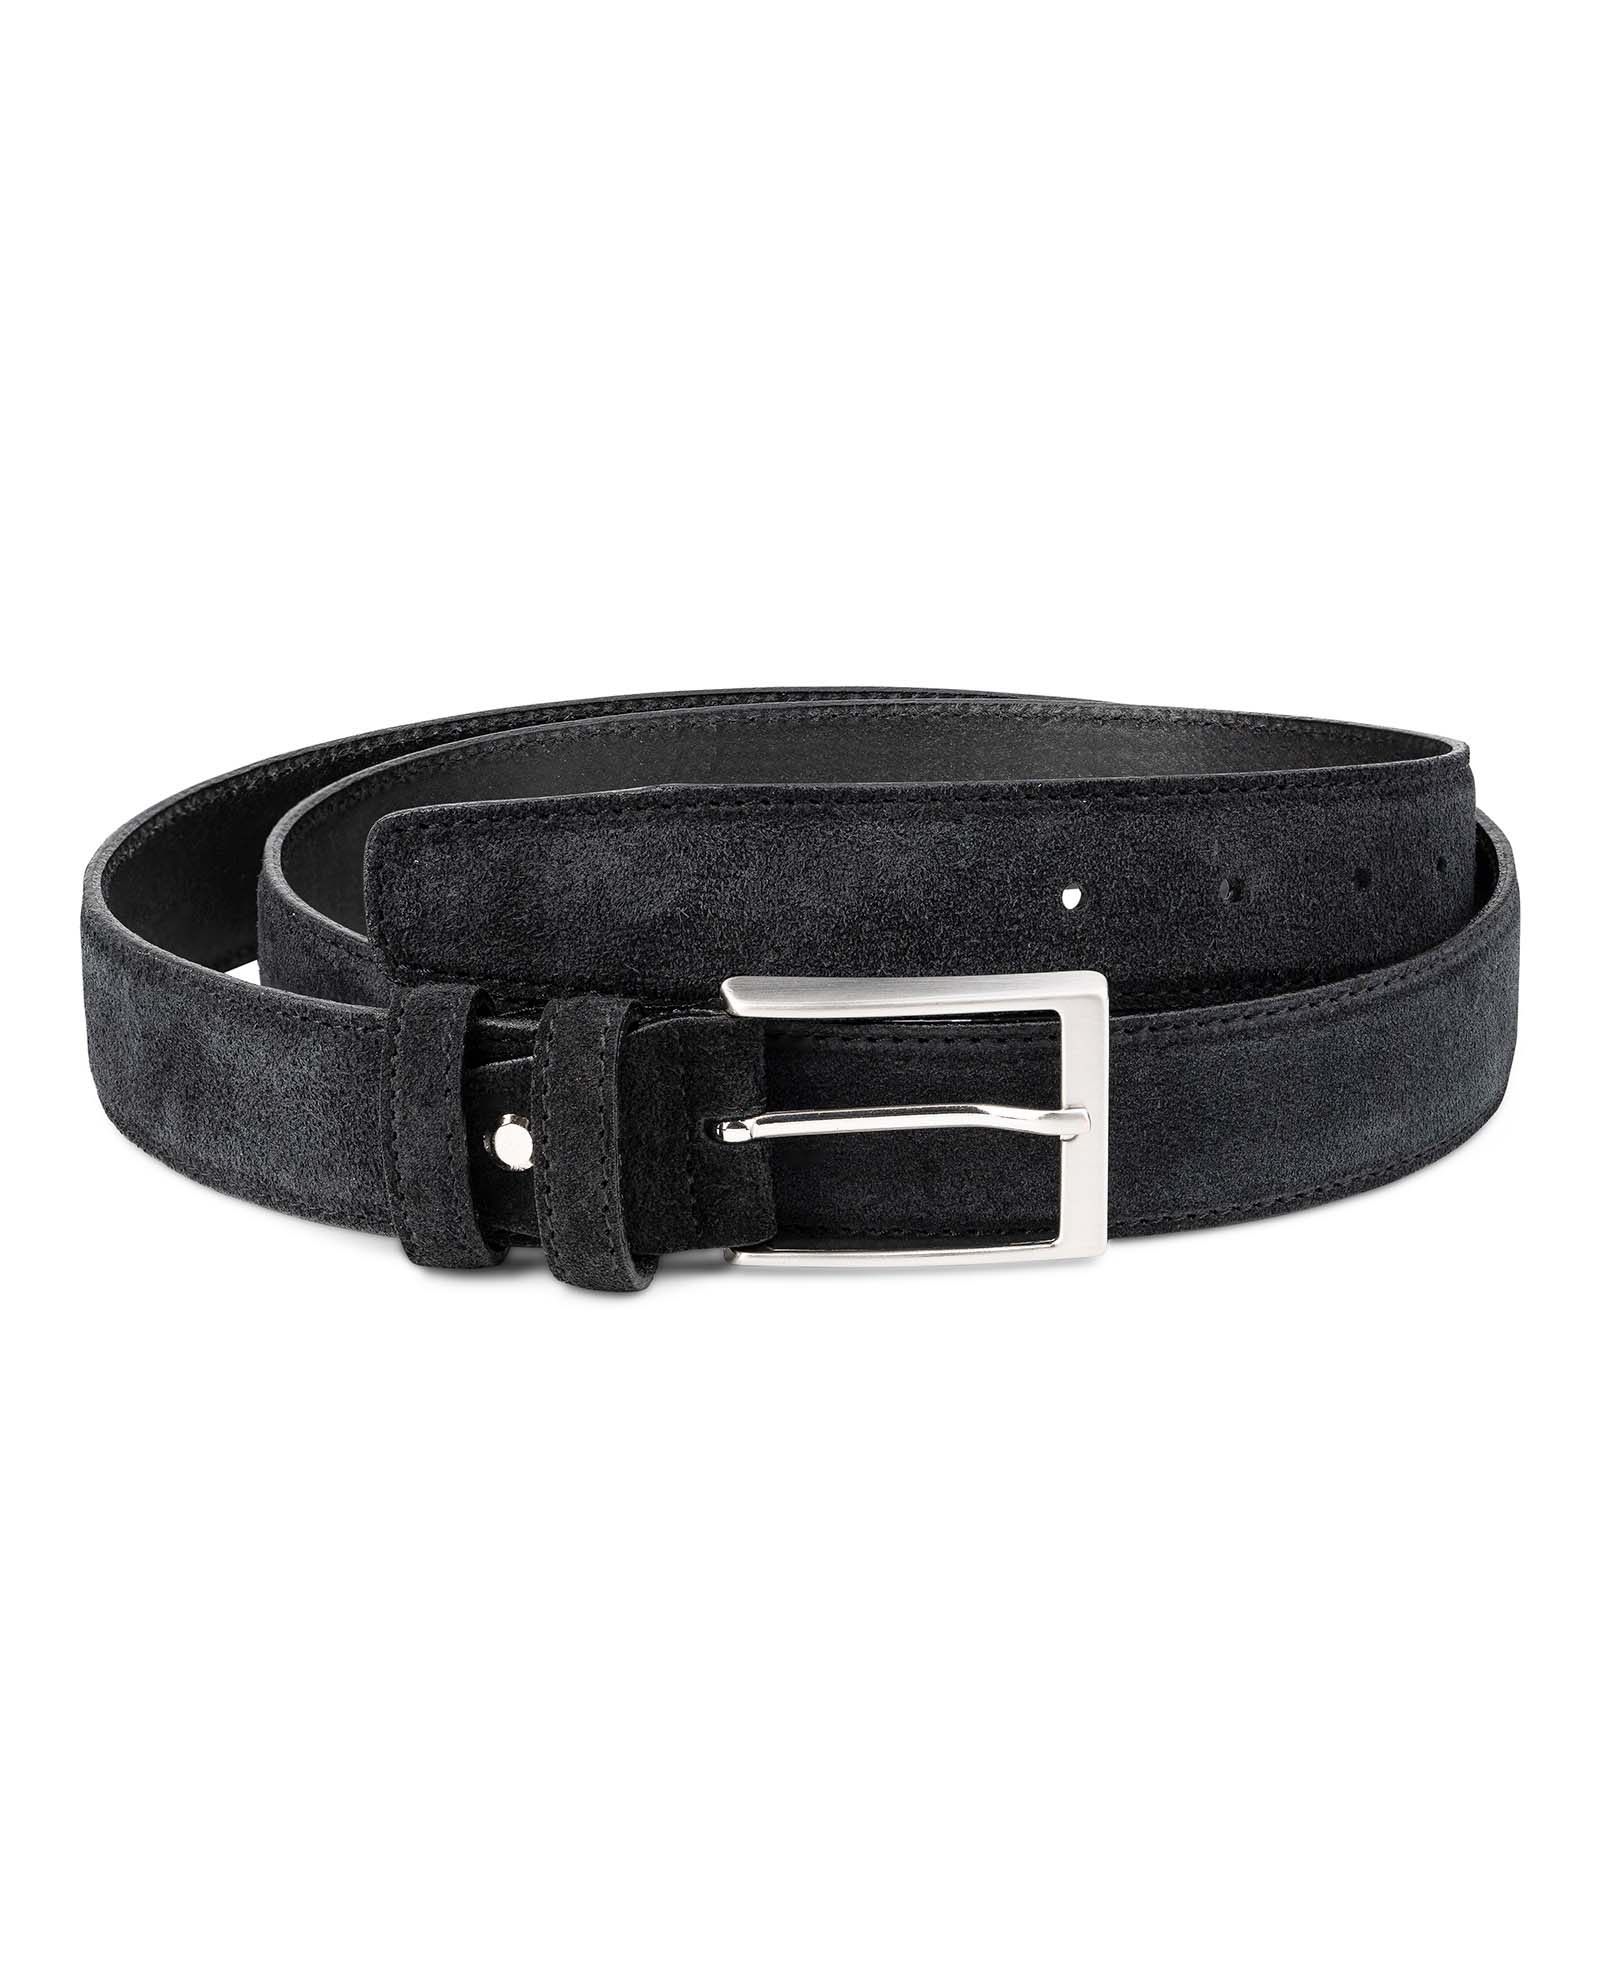 Buy Black Suede Belt Men's 35 mm | LeatherBeltsOnline.com | Free Ship